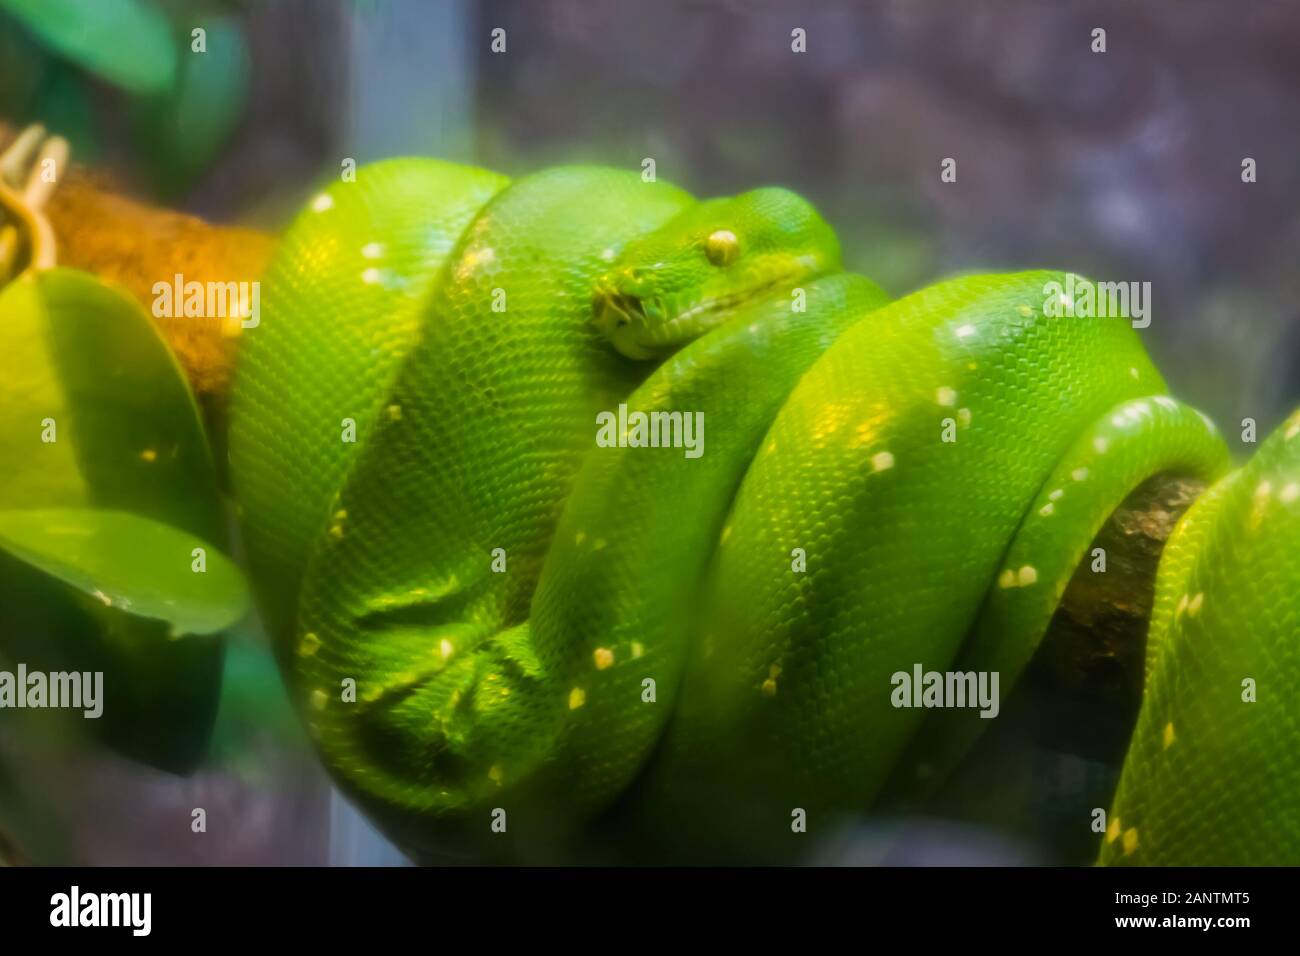 Libre de python, d'arbres tropicaux populaires serpent espèce d'Asie et l'Australie Banque D'Images